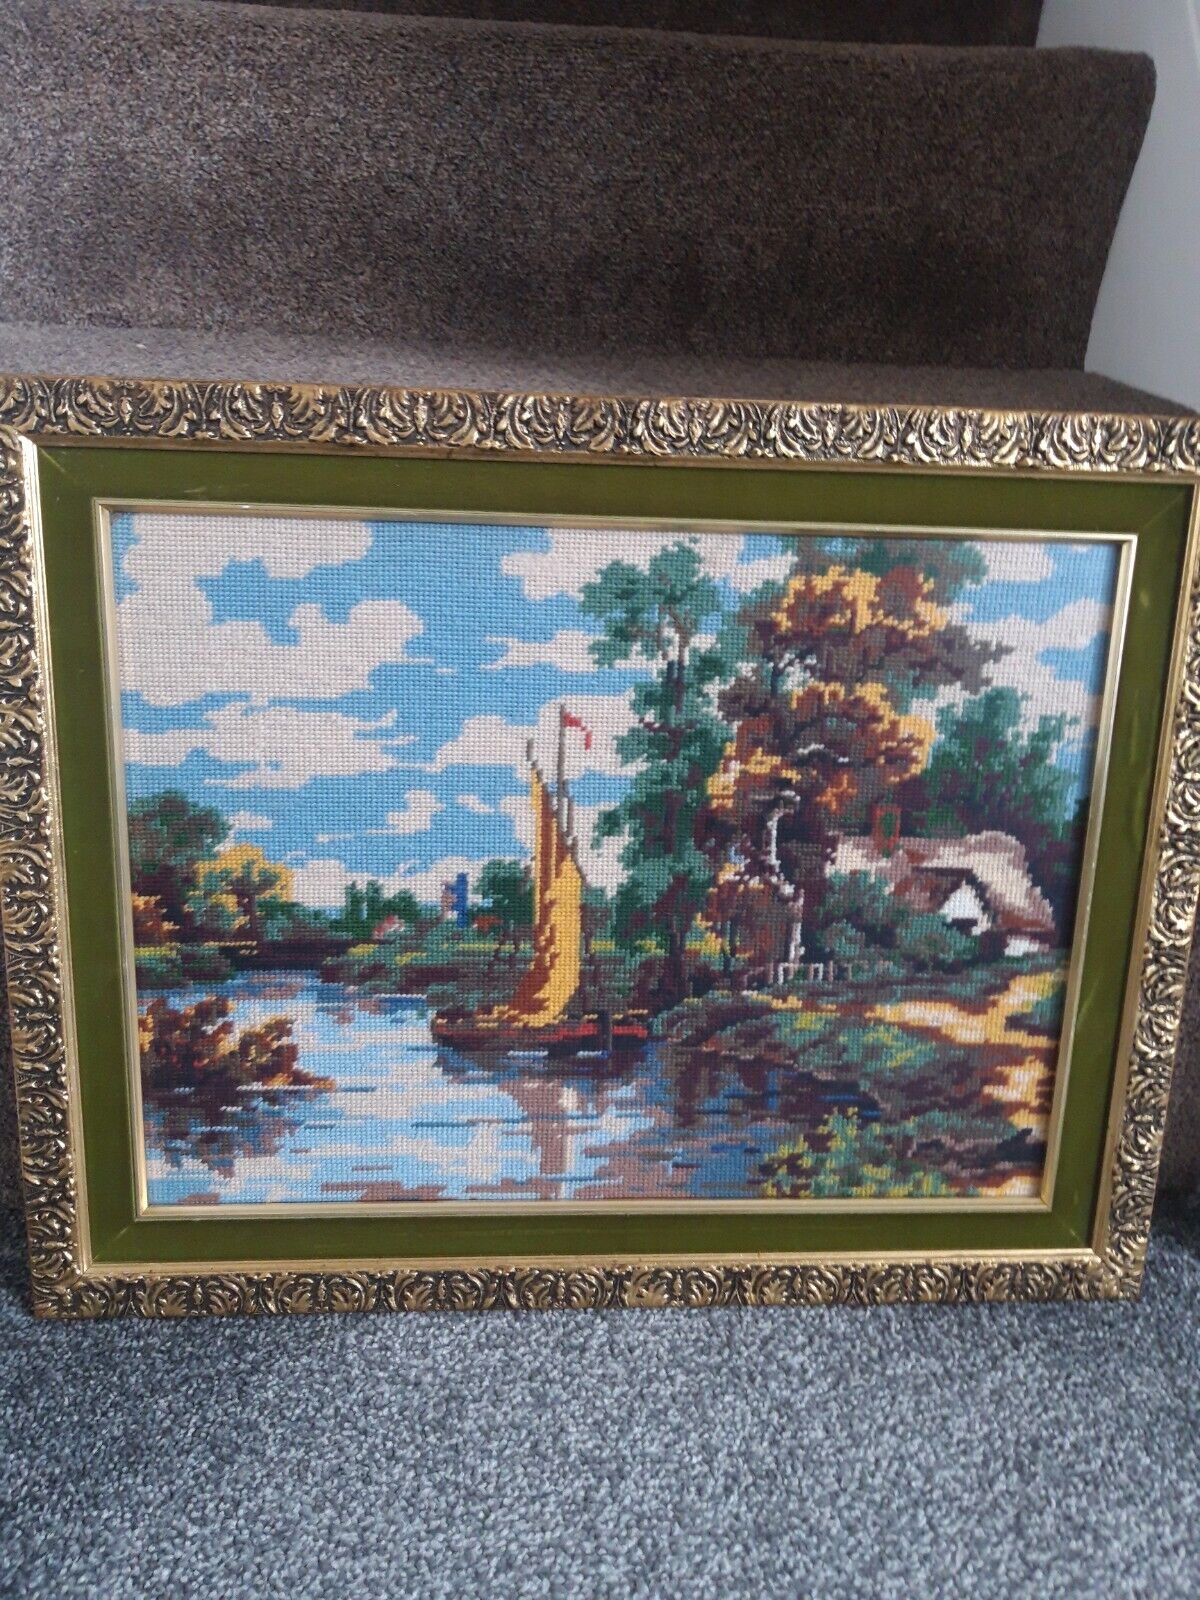 Vintage Gold Framed Tapestry Colourful Lake Scene  60x48cms, Green Velvet Border